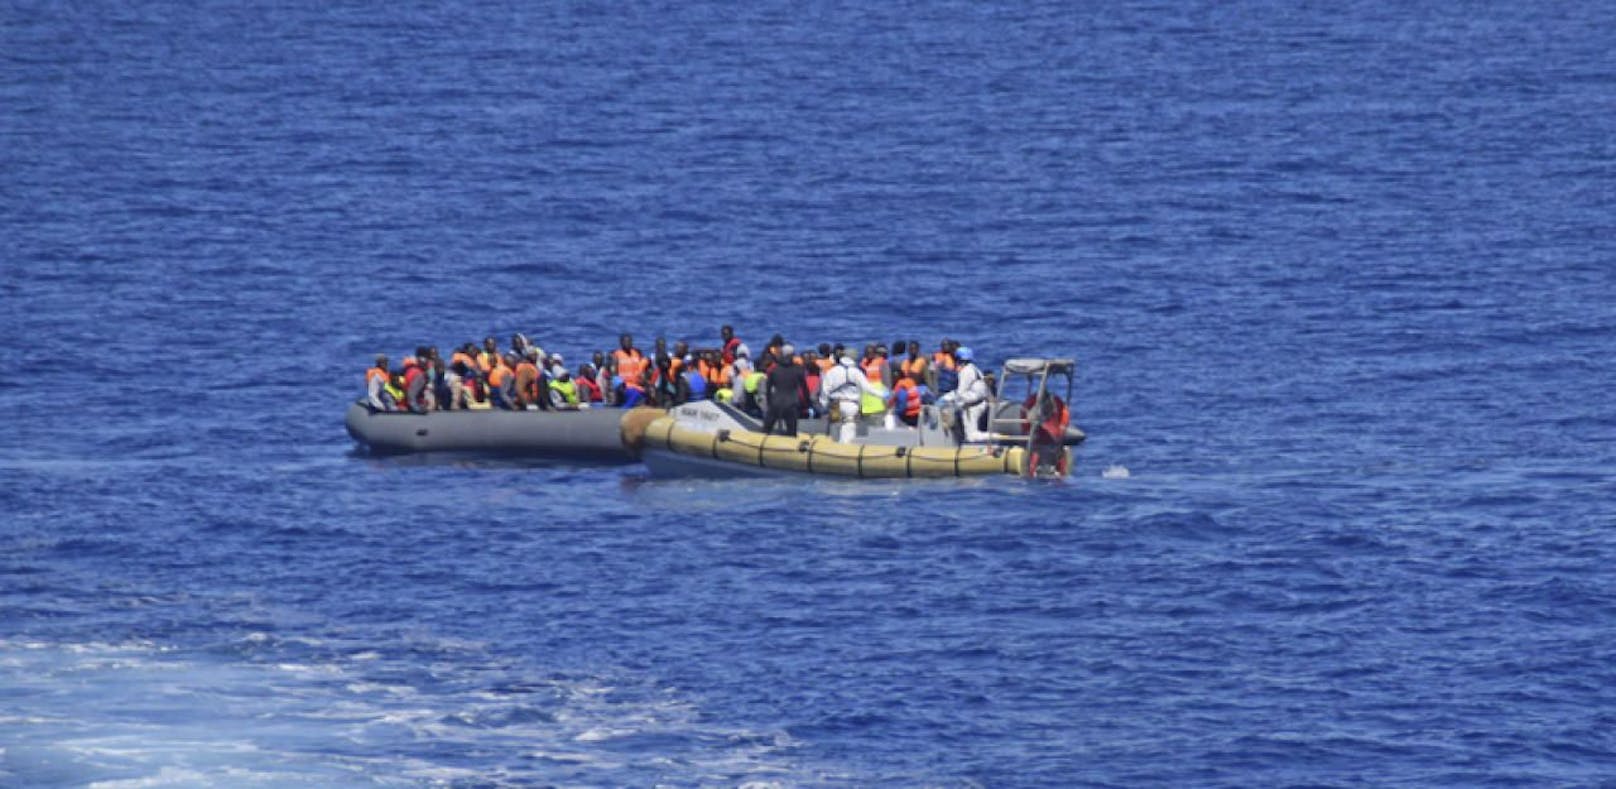 Auf kleinen Booten versuchen Flüchtlinge übers Mittelmeer nach Europa zu gelangen. Immer wieder kentern solche Boote. (Symbolfoto)